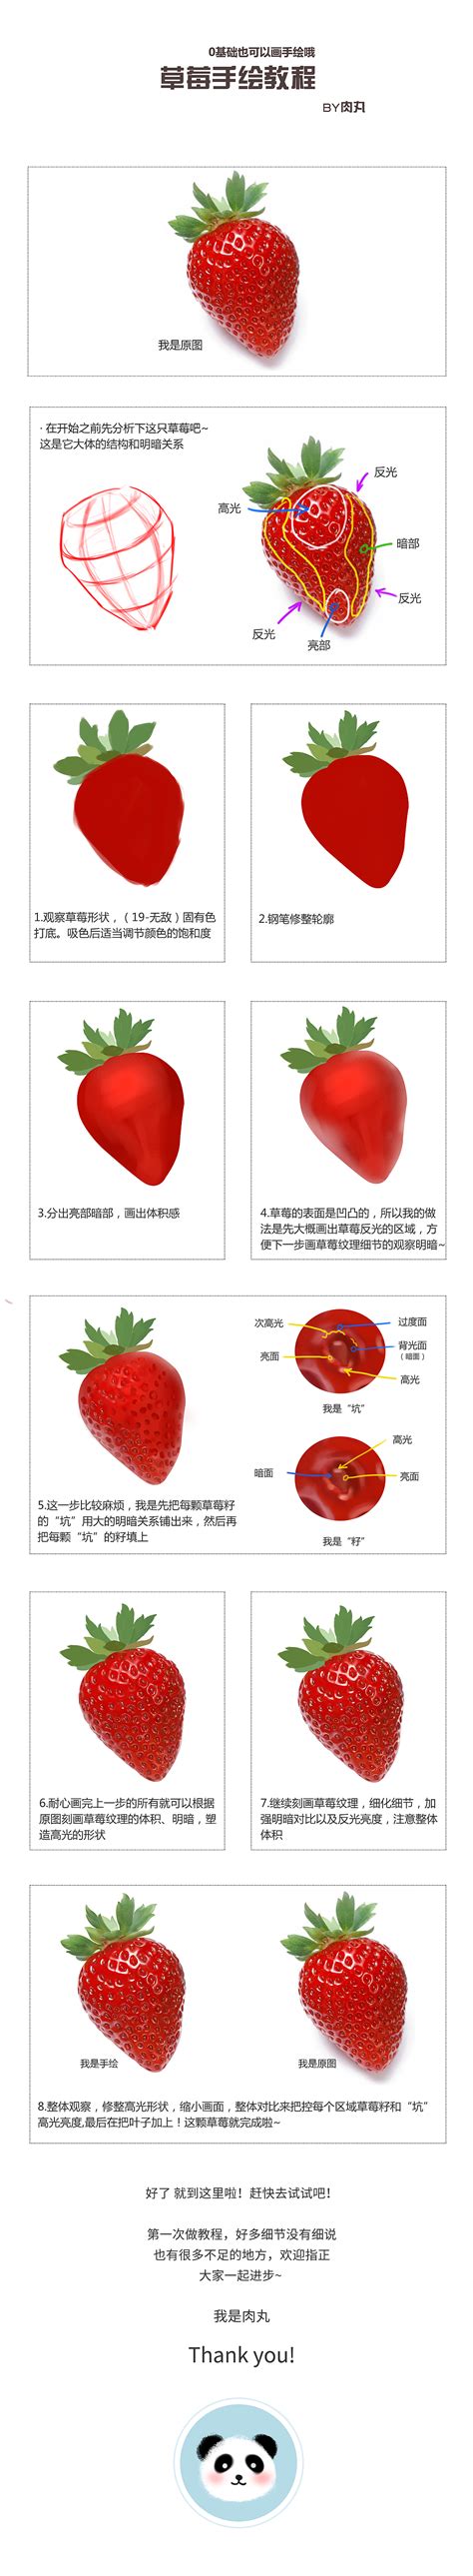 种植草莓的技术和日常管理方法 - 农村网